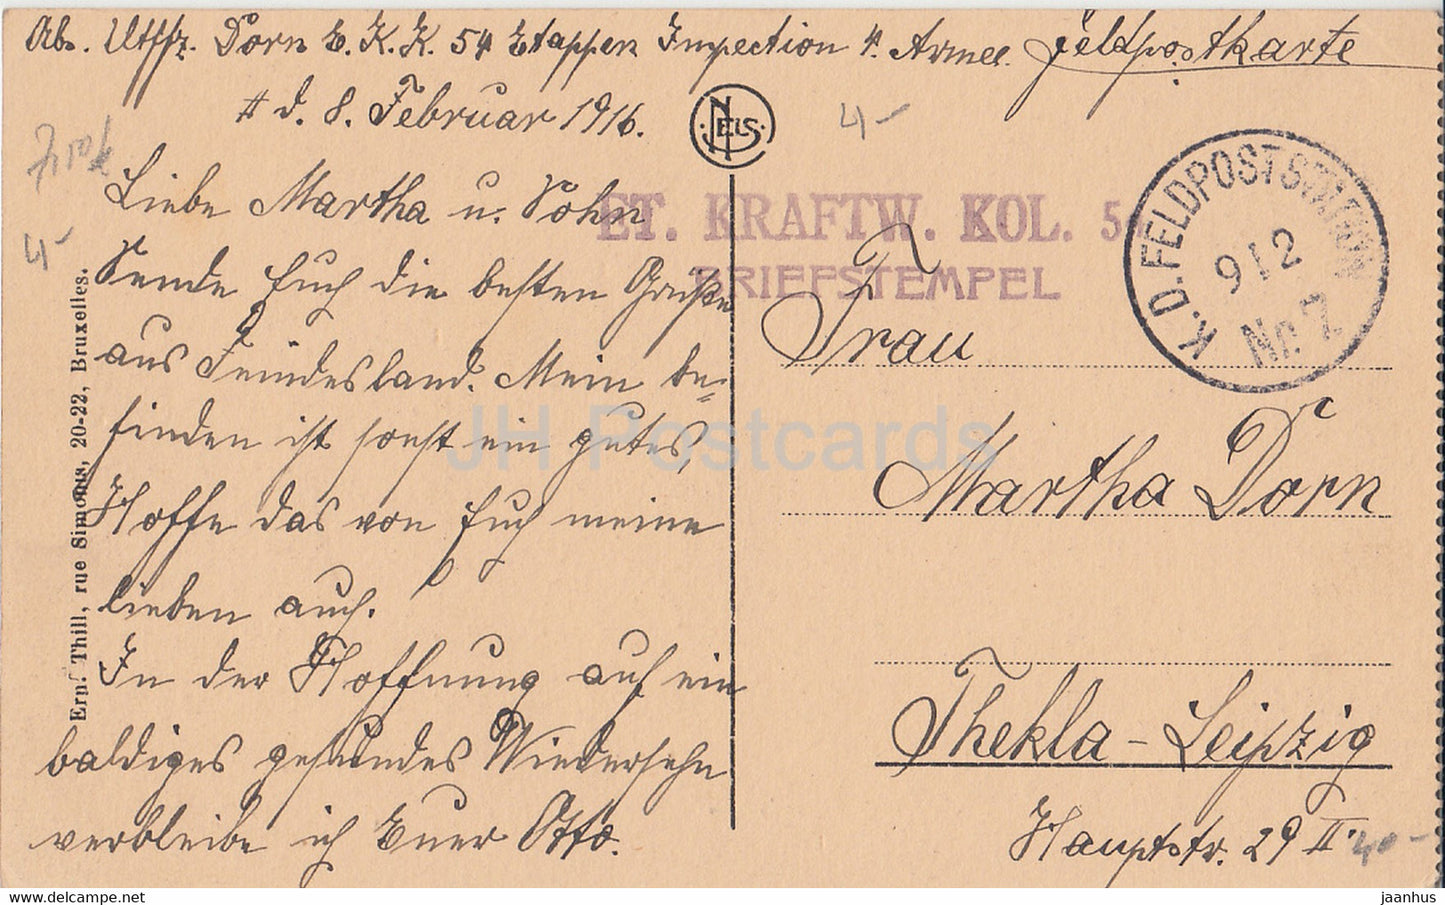 Dinant - Vue Generale - Et Kraftw Kol 54 -Feldpost - old postcard - 1916 - Belgium - used